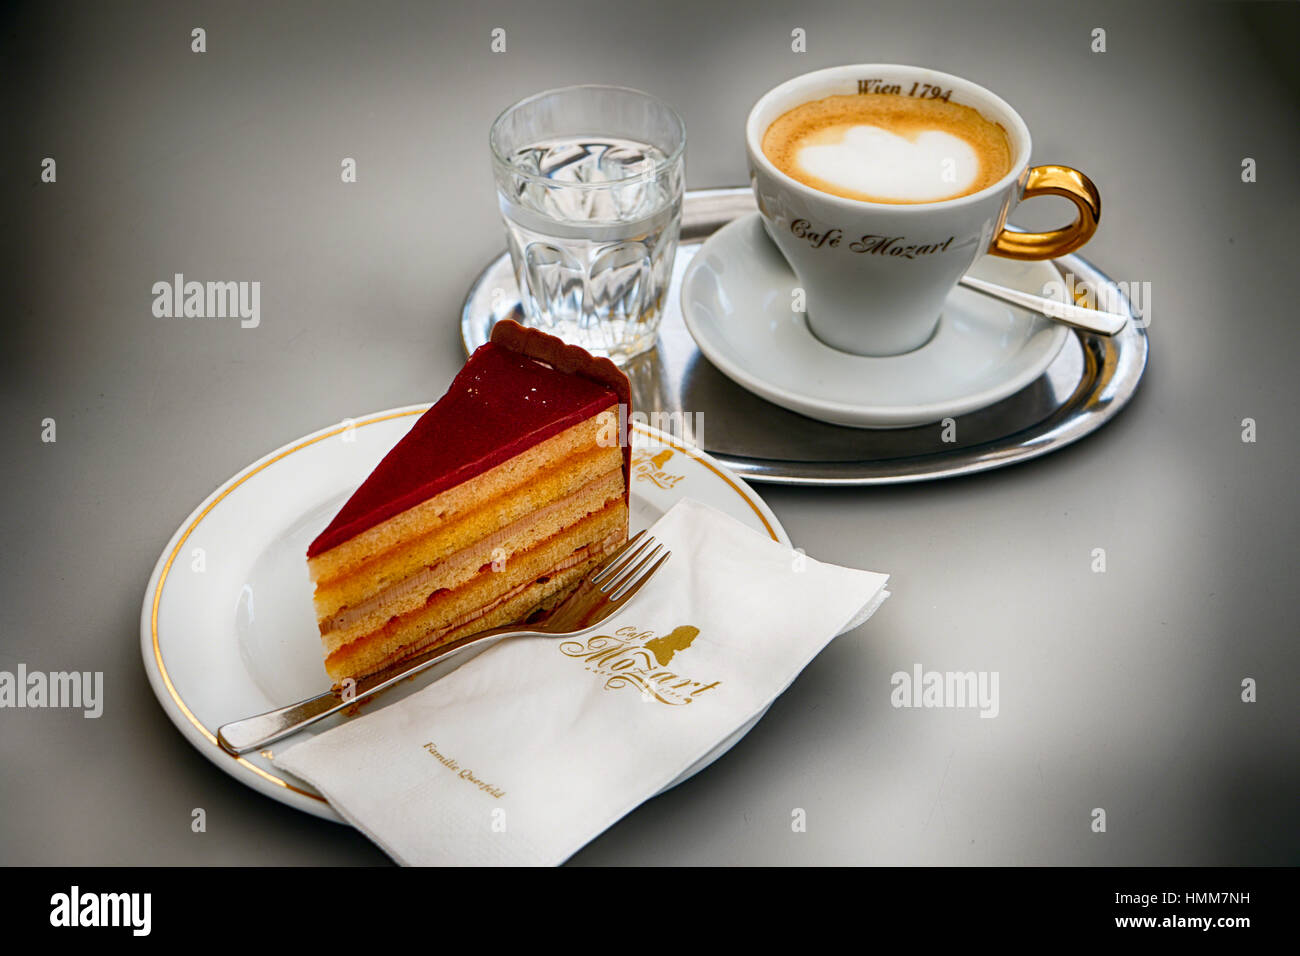 Nahaufnahme eines Landtmann feine Torte mit einem Espresso Kaffee und Mineralwasser, Cafe Mozart, Wien, Österreich Stockfoto